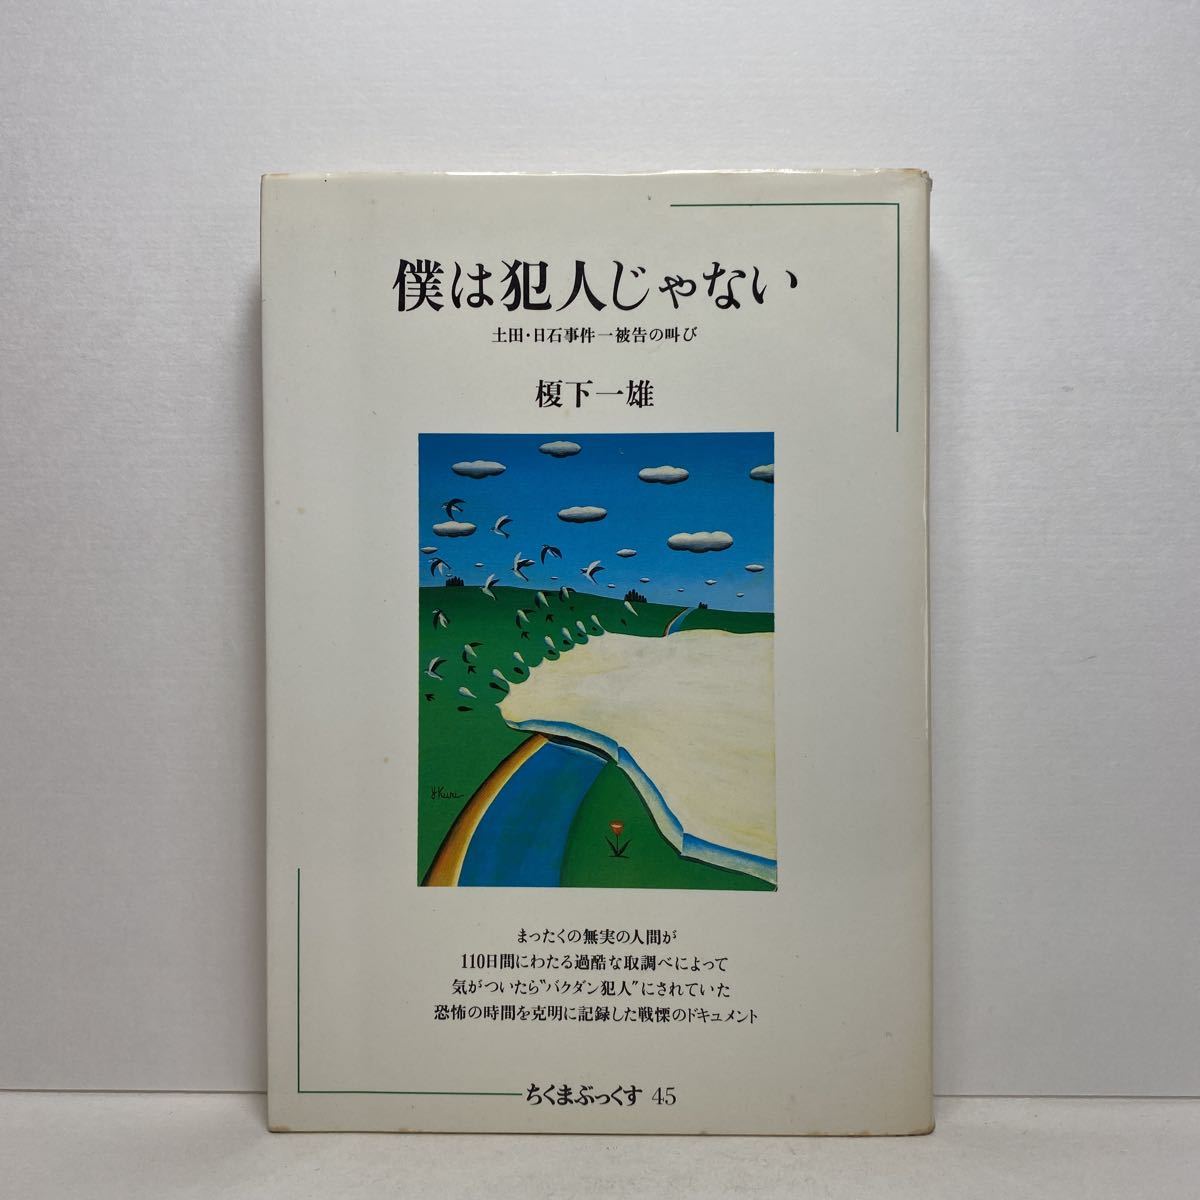 a5/.. . человек .. нет земля рисовое поле * день камень . раз один ... ... внизу один самец Chikuma ....45.. книжный магазин 1983 год первая версия монография стоимость доставки 180 иен ( Yu-Mail )